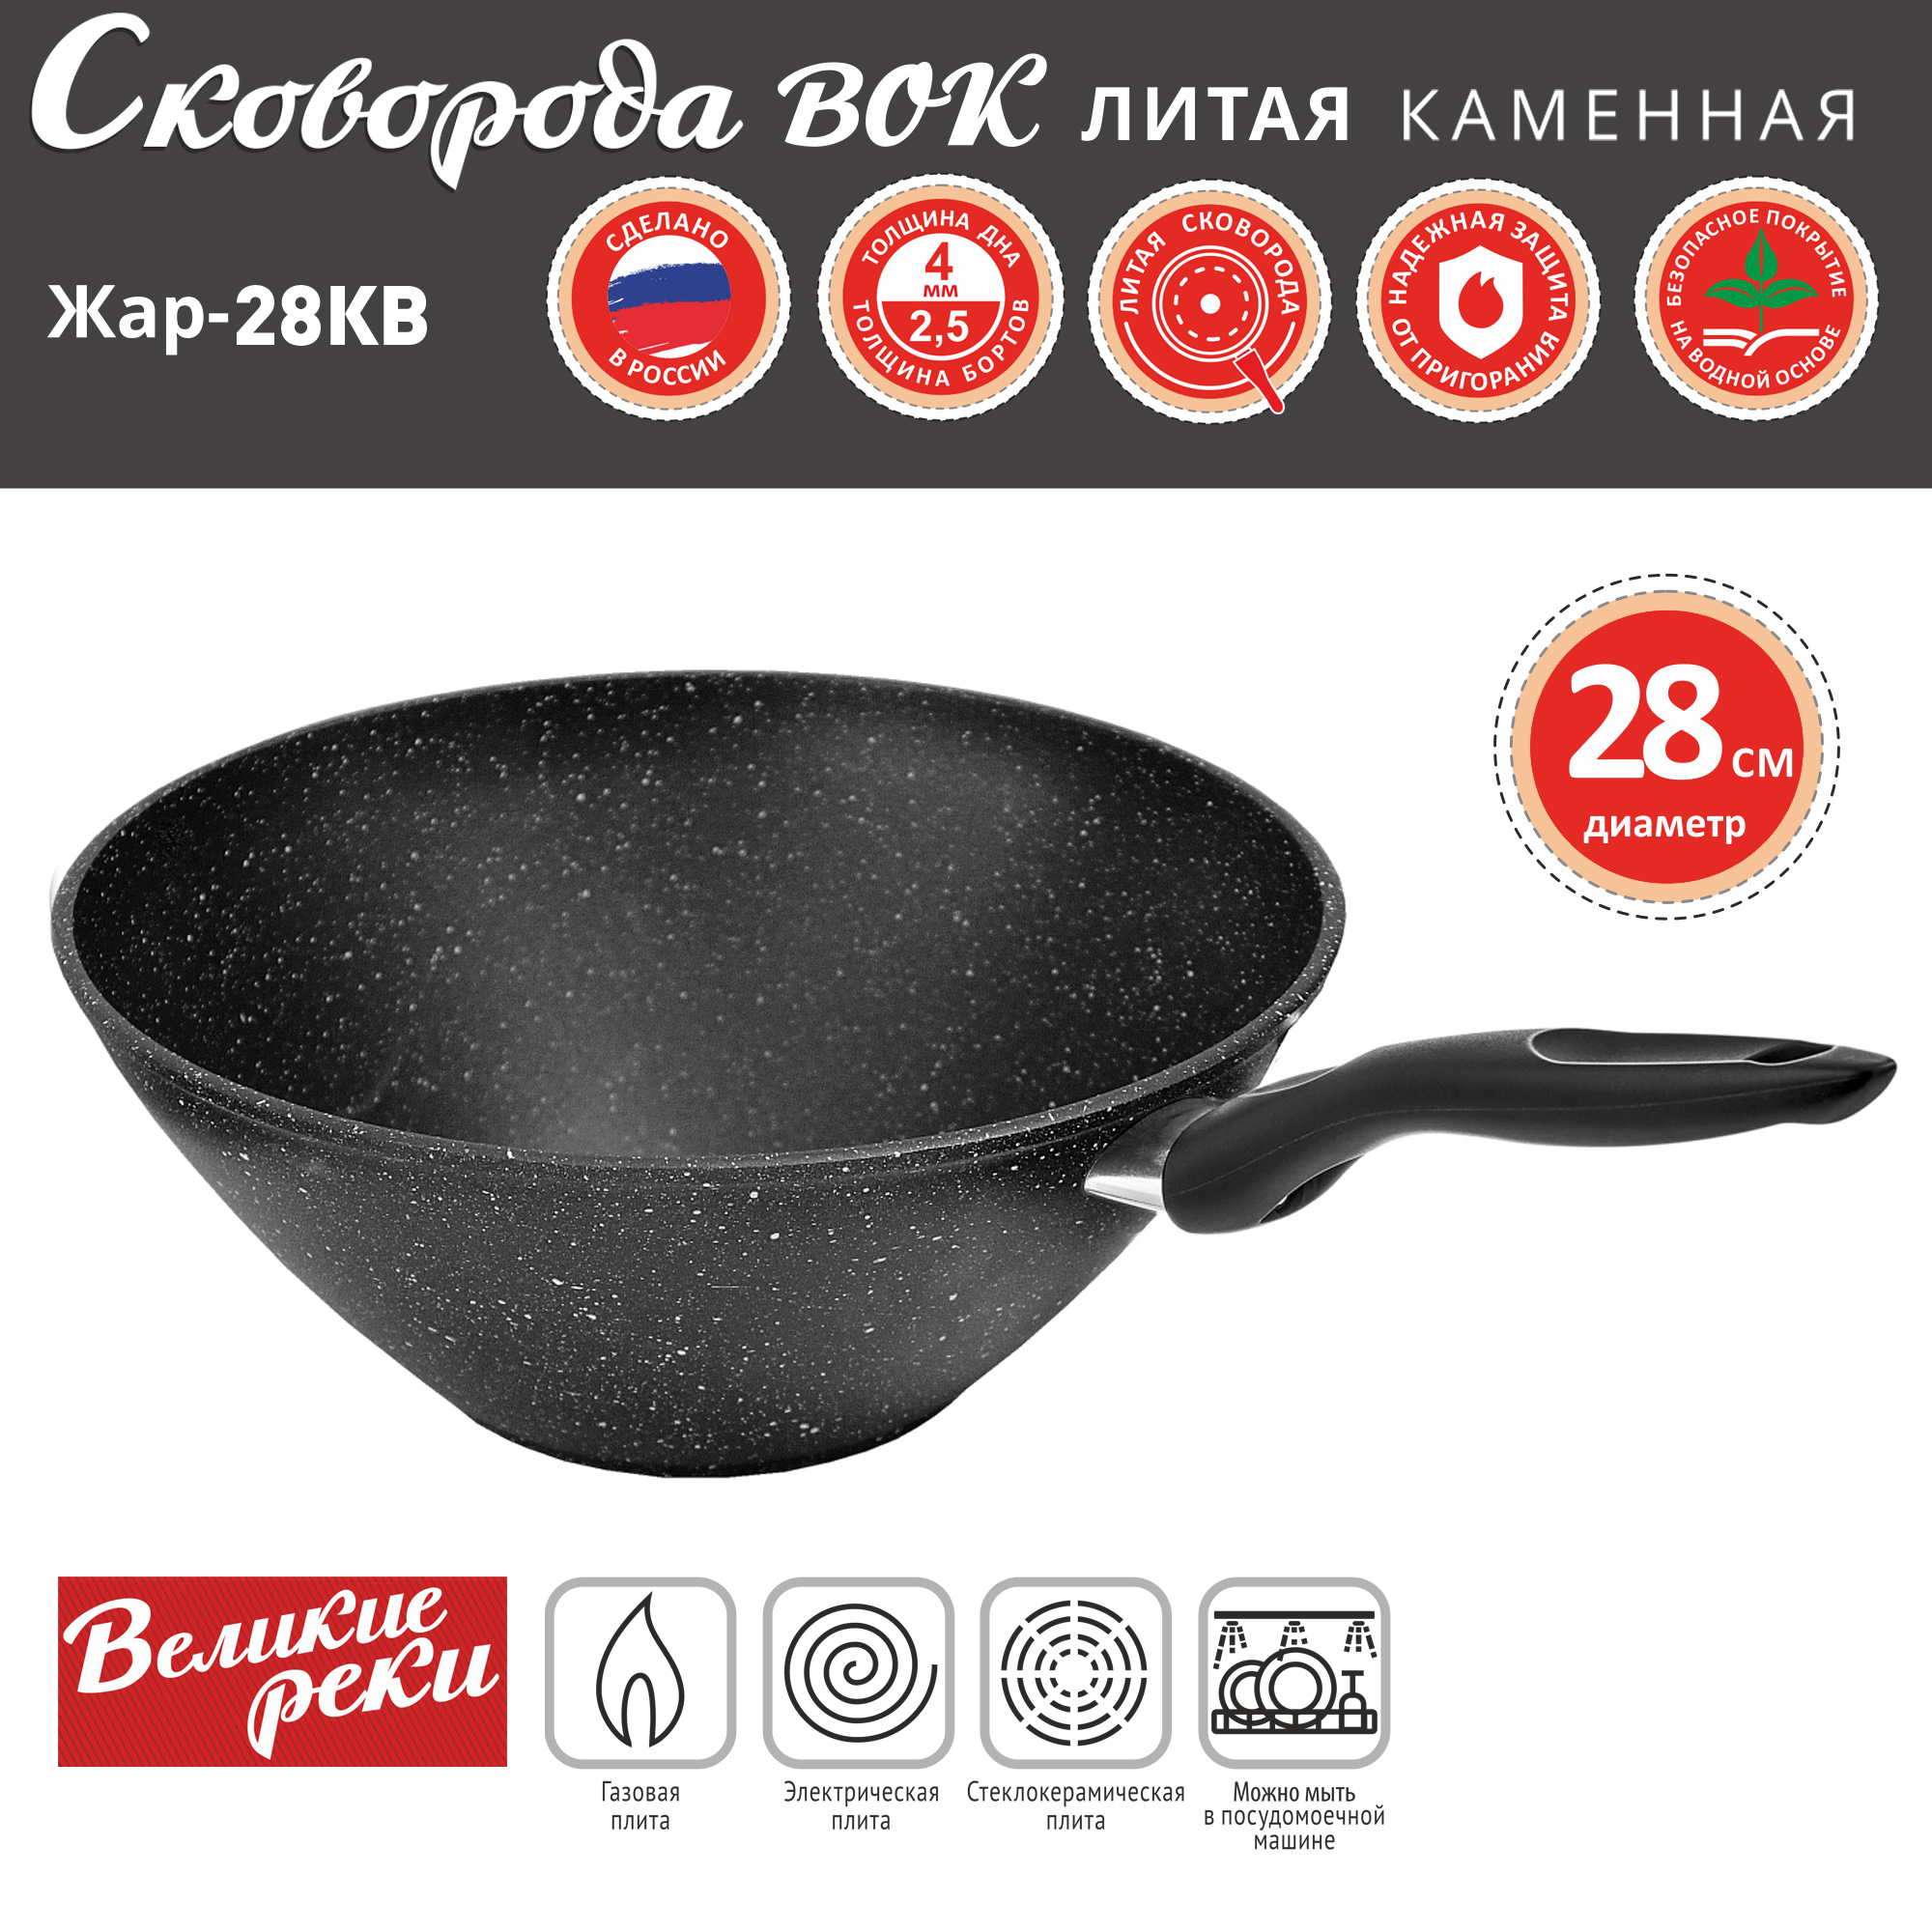 Сковорода ВОК Великие Реки Жар-28КВ литая, классическая каменная черная 28см